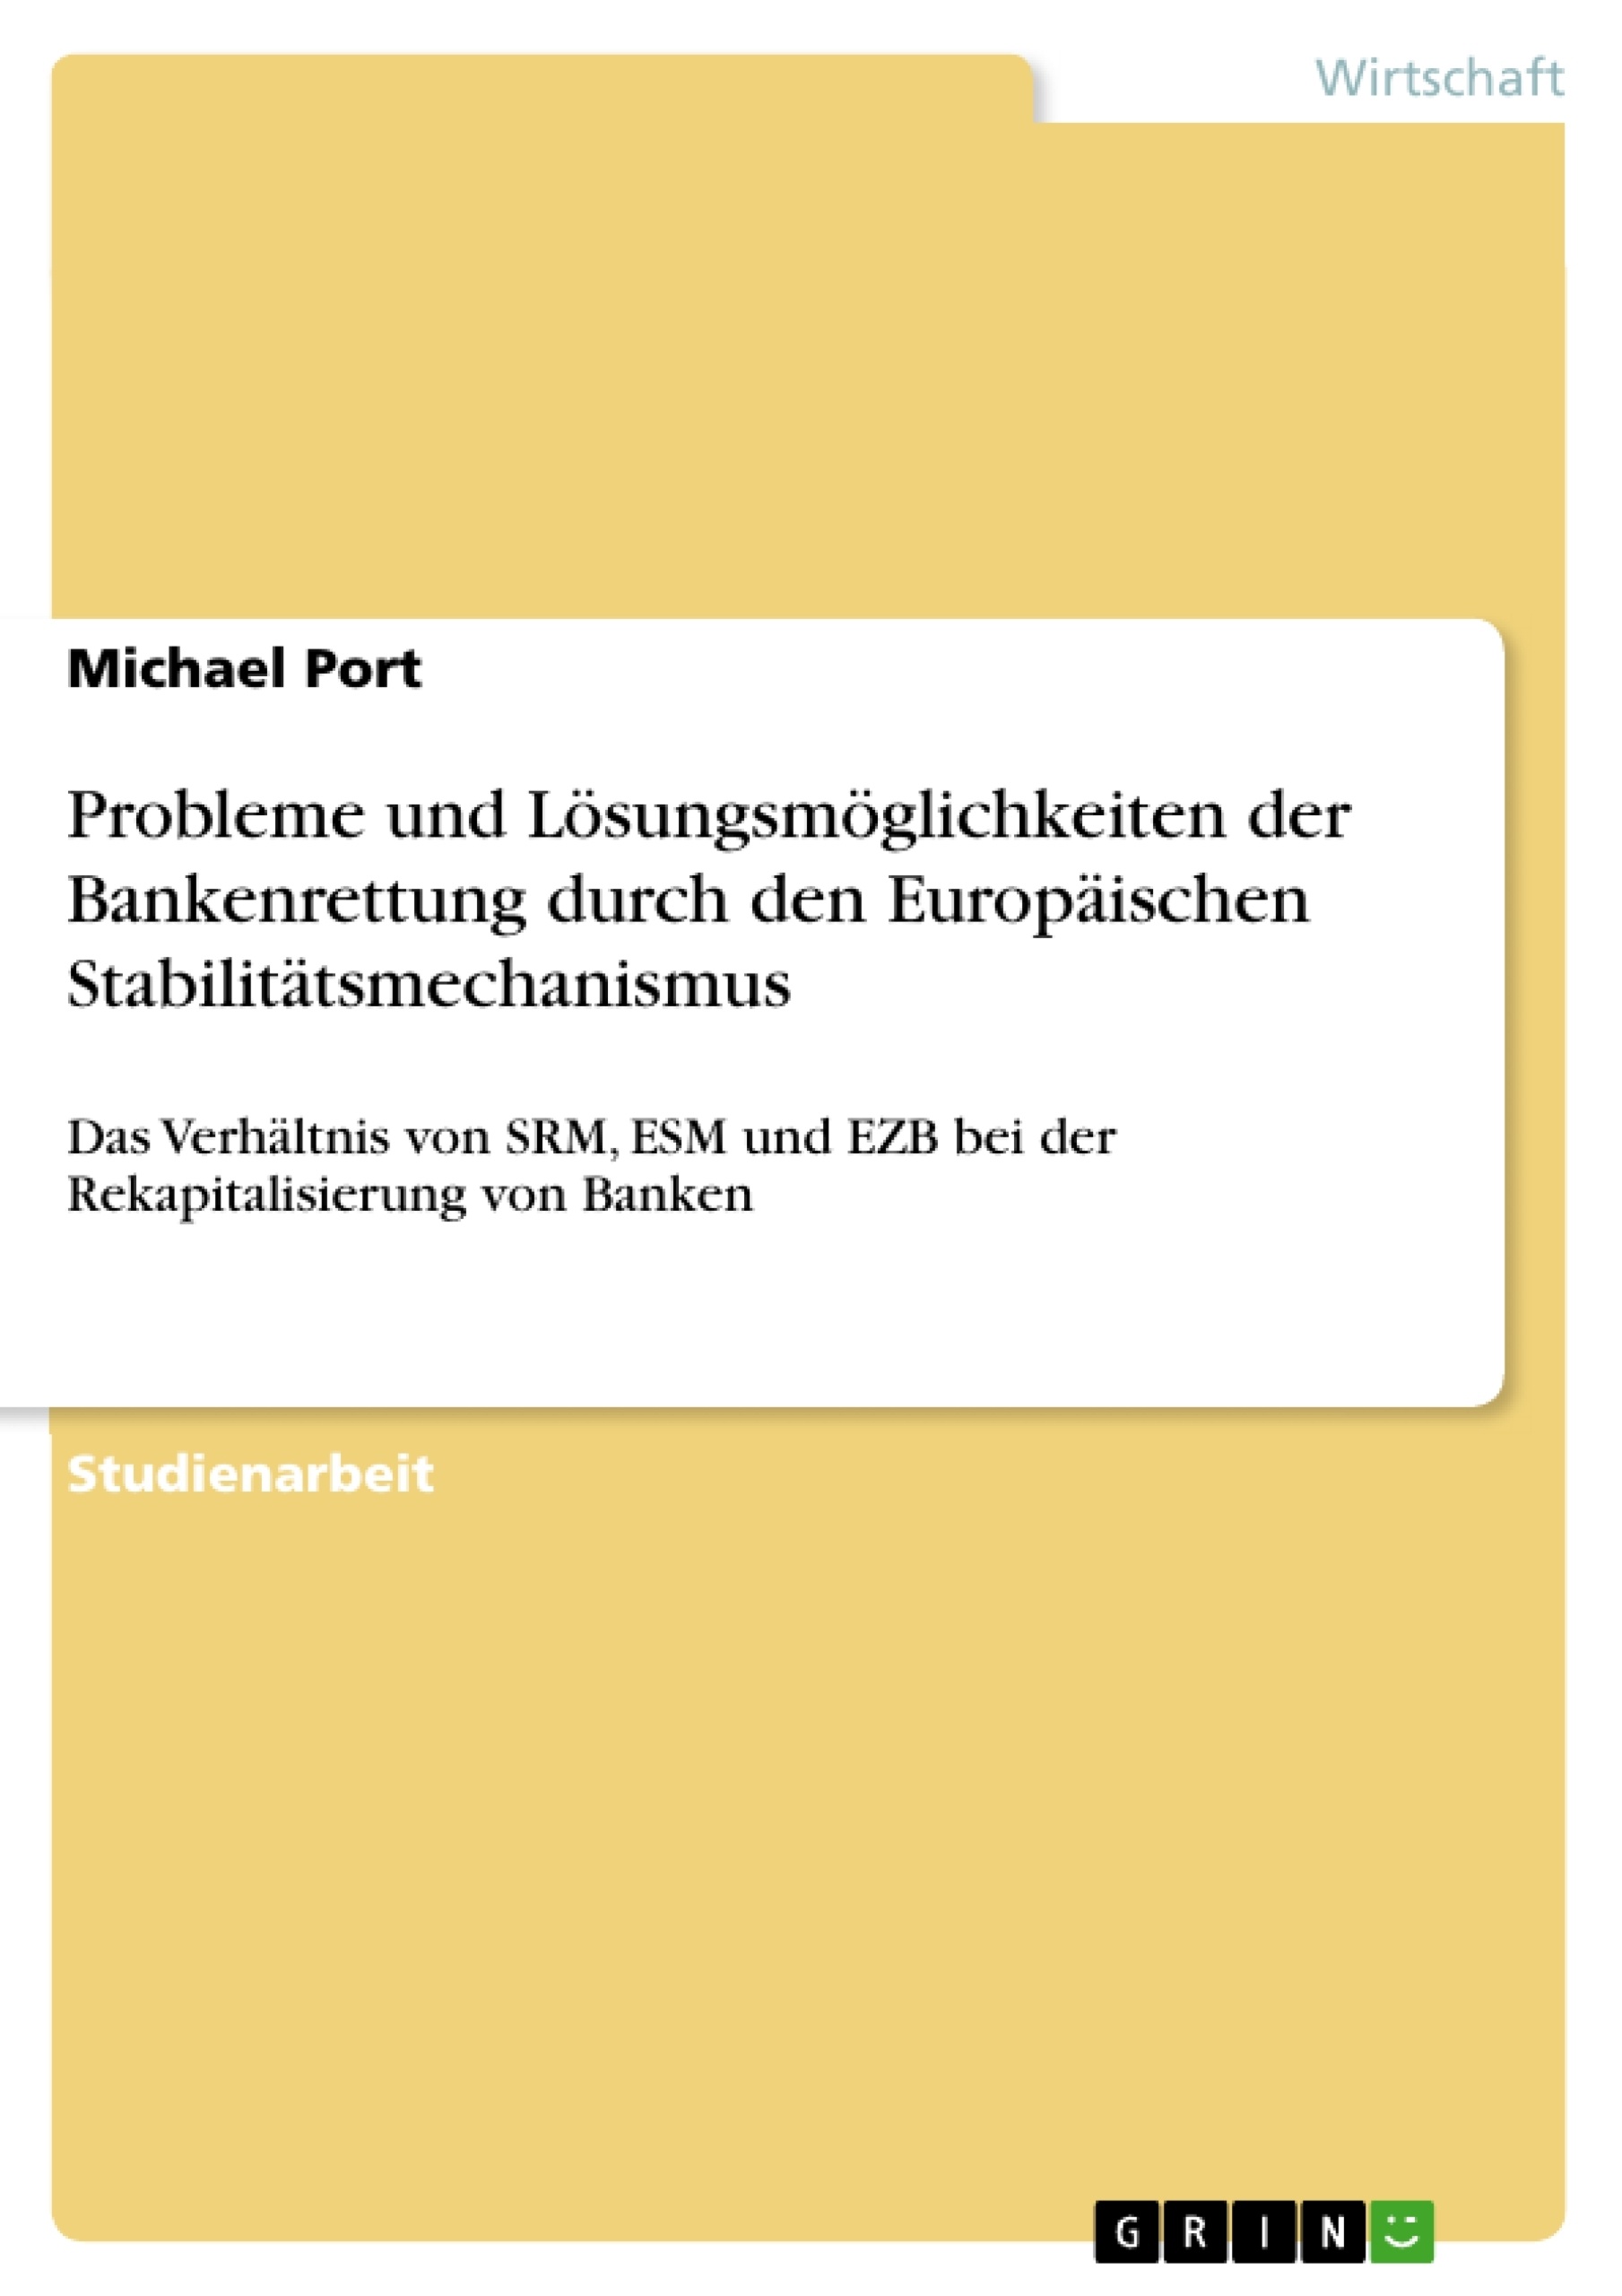 Title: Probleme und Lösungsmöglichkeiten der Bankenrettung durch den Europäischen Stabilitätsmechanismus